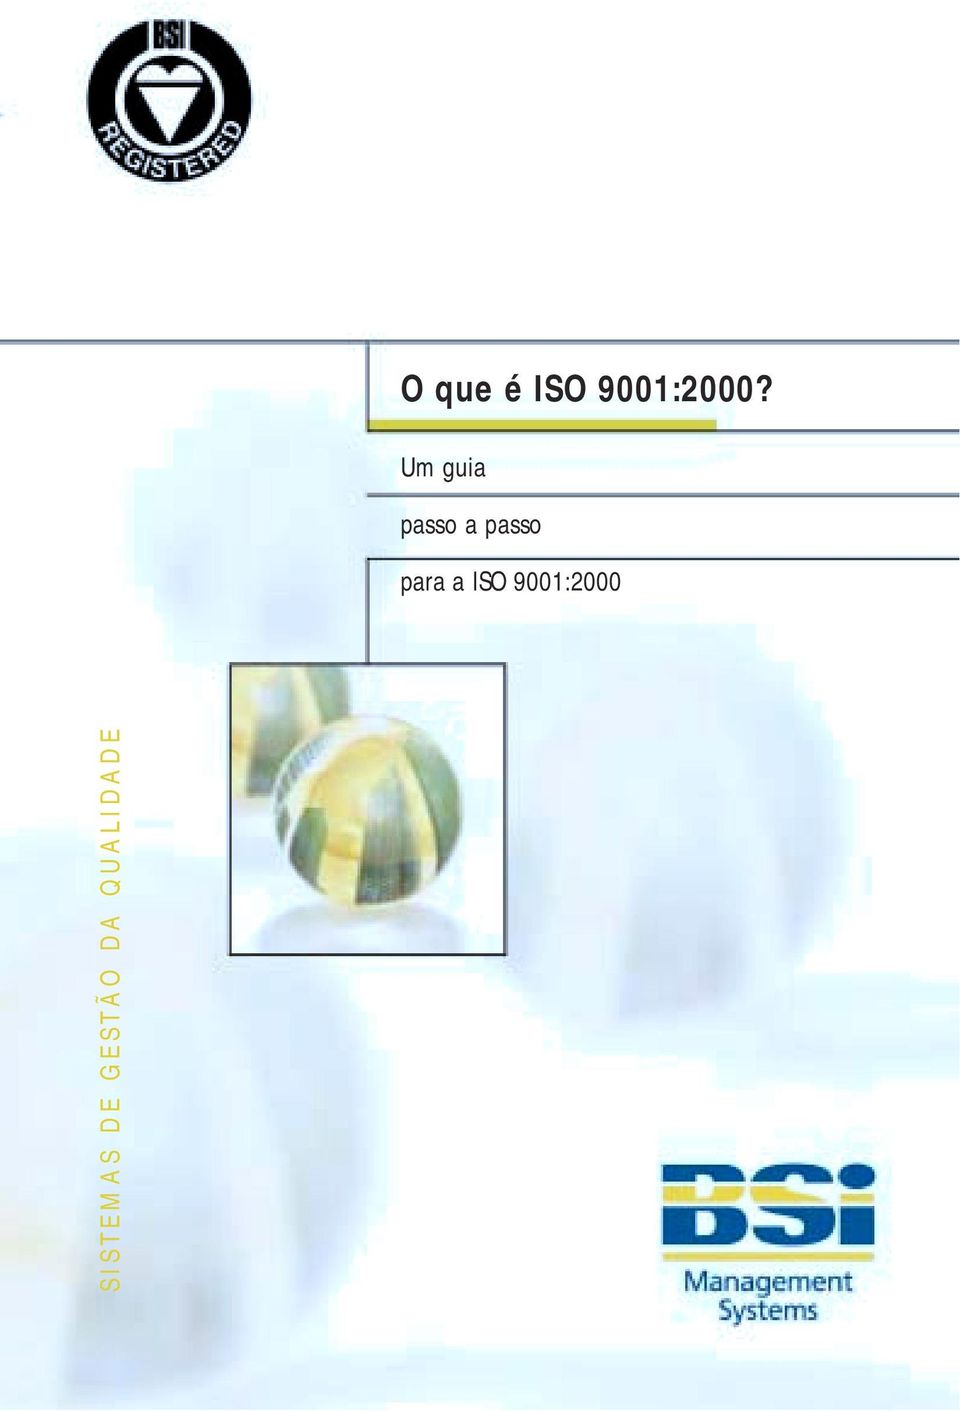 para a ISO 9001:2000